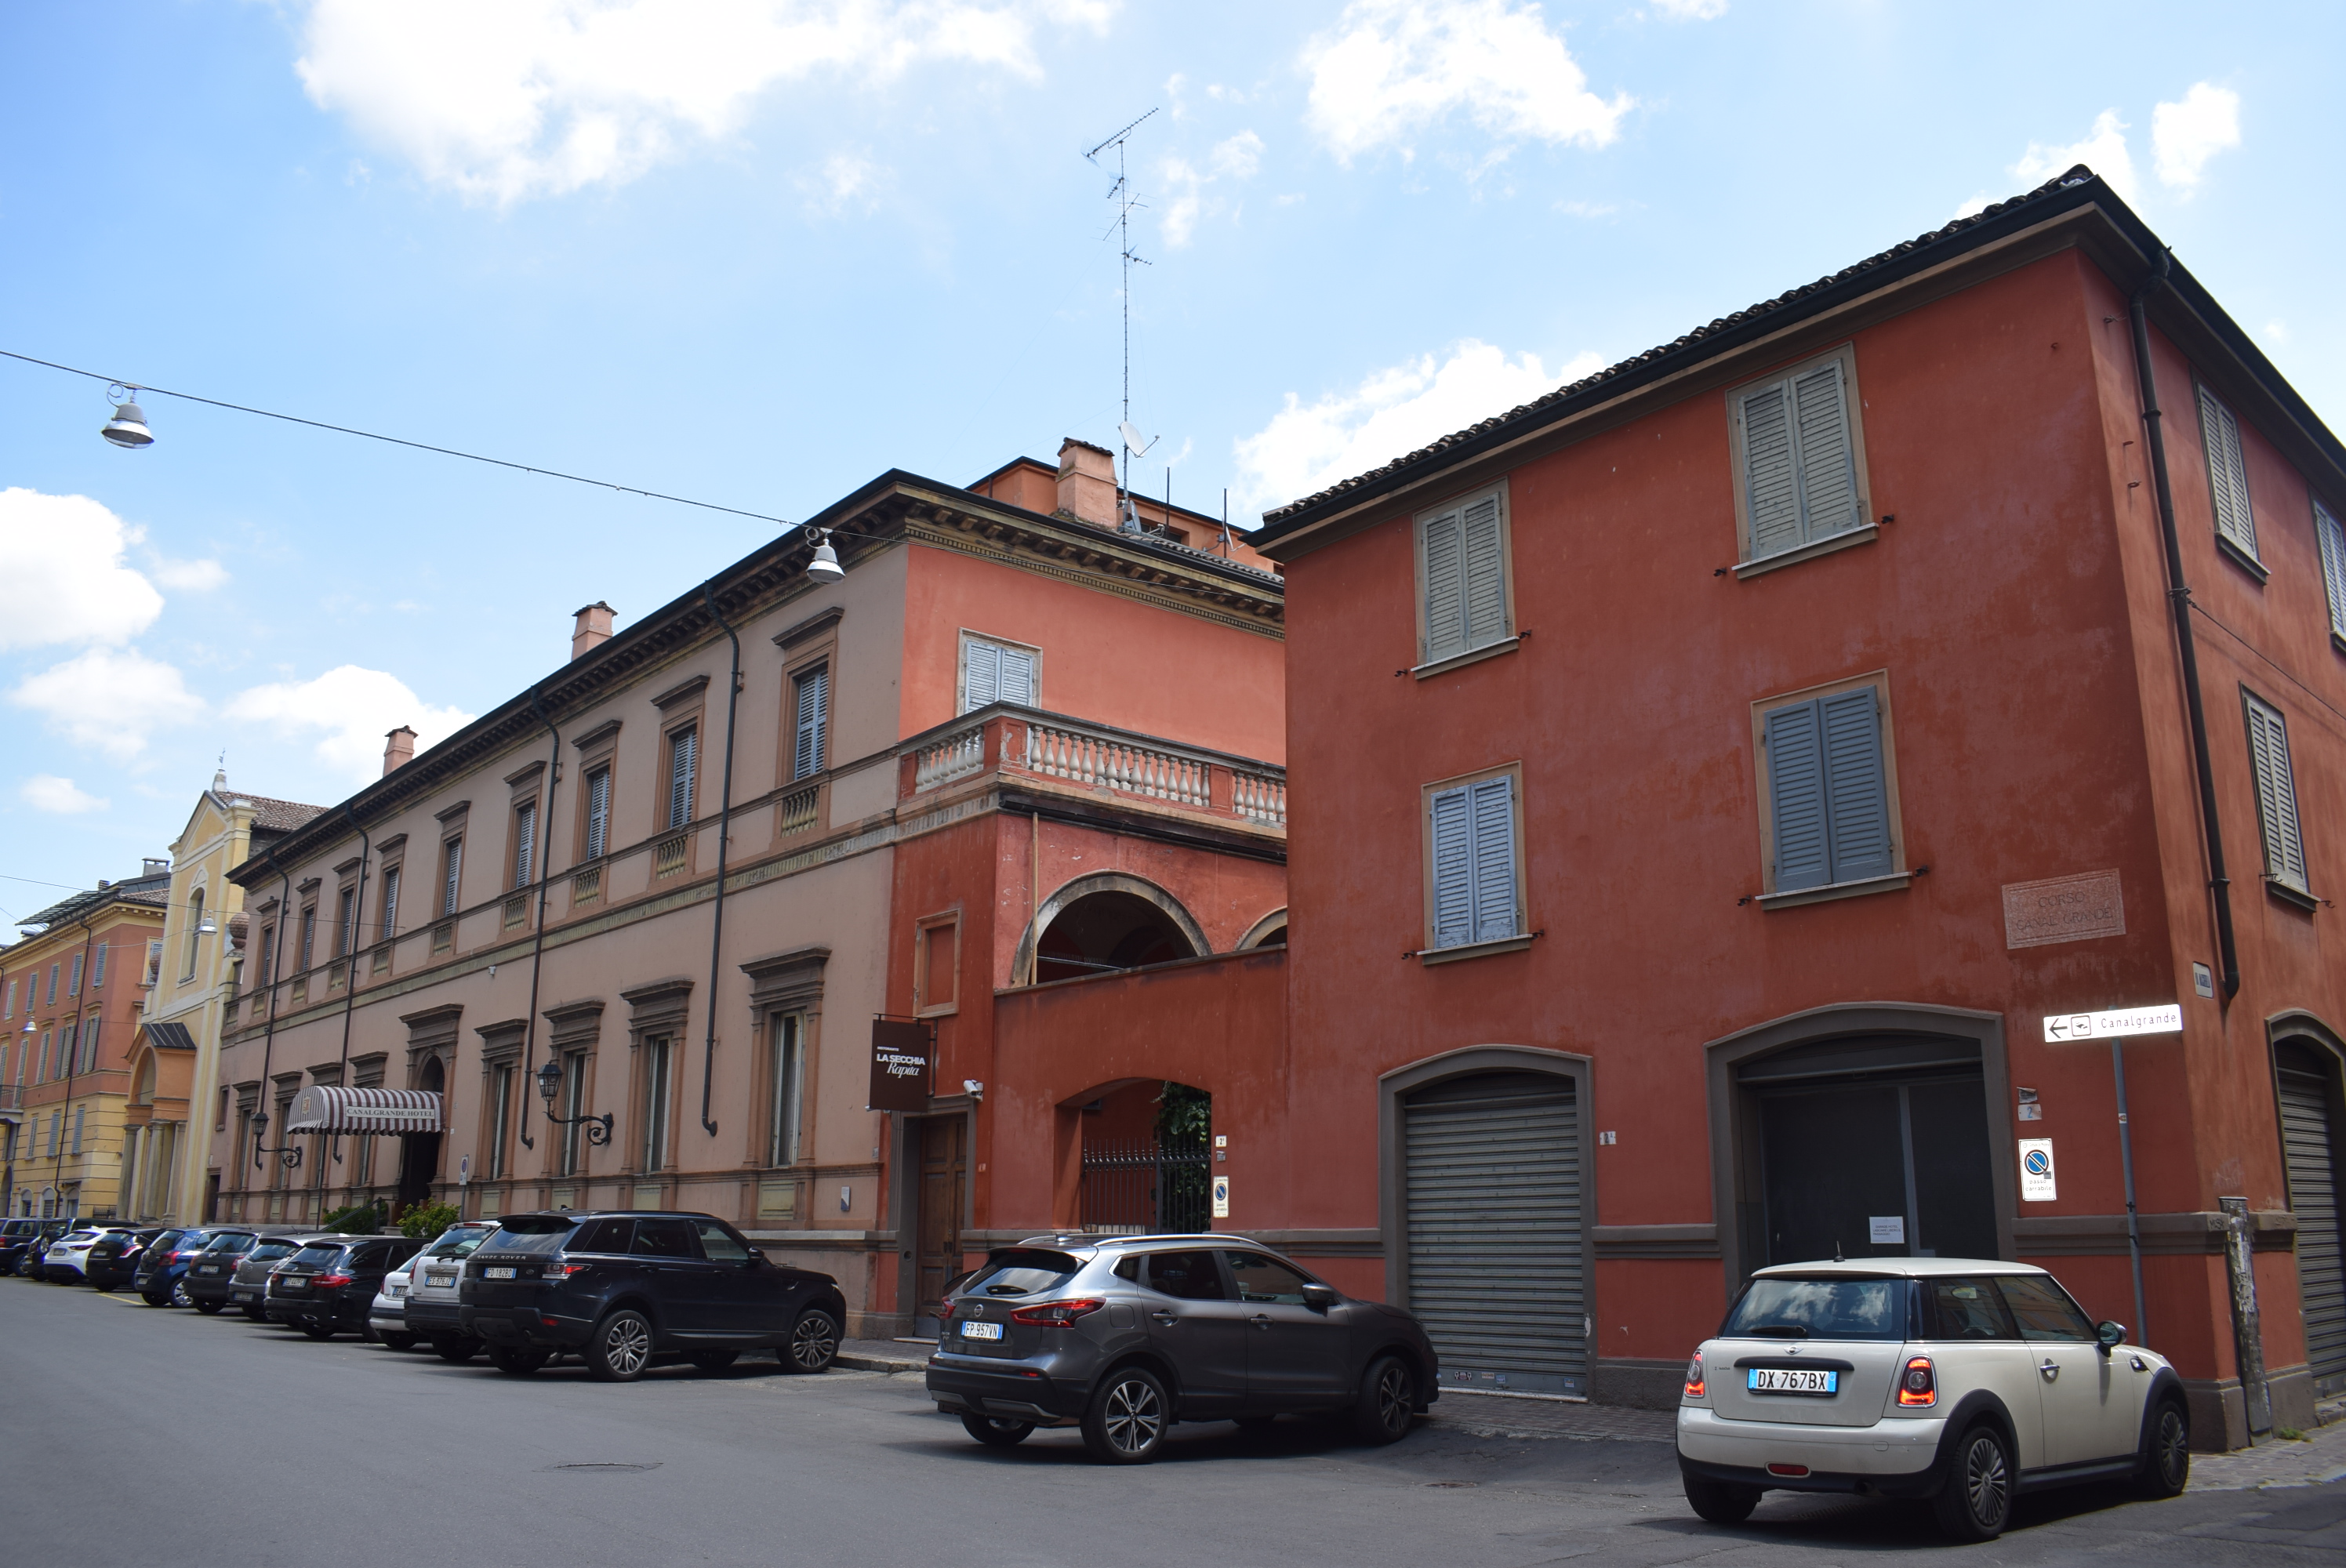 Palazzo Schedoni (palazzo, nobiliare) - Modena (MO)  (sec. XVIII)